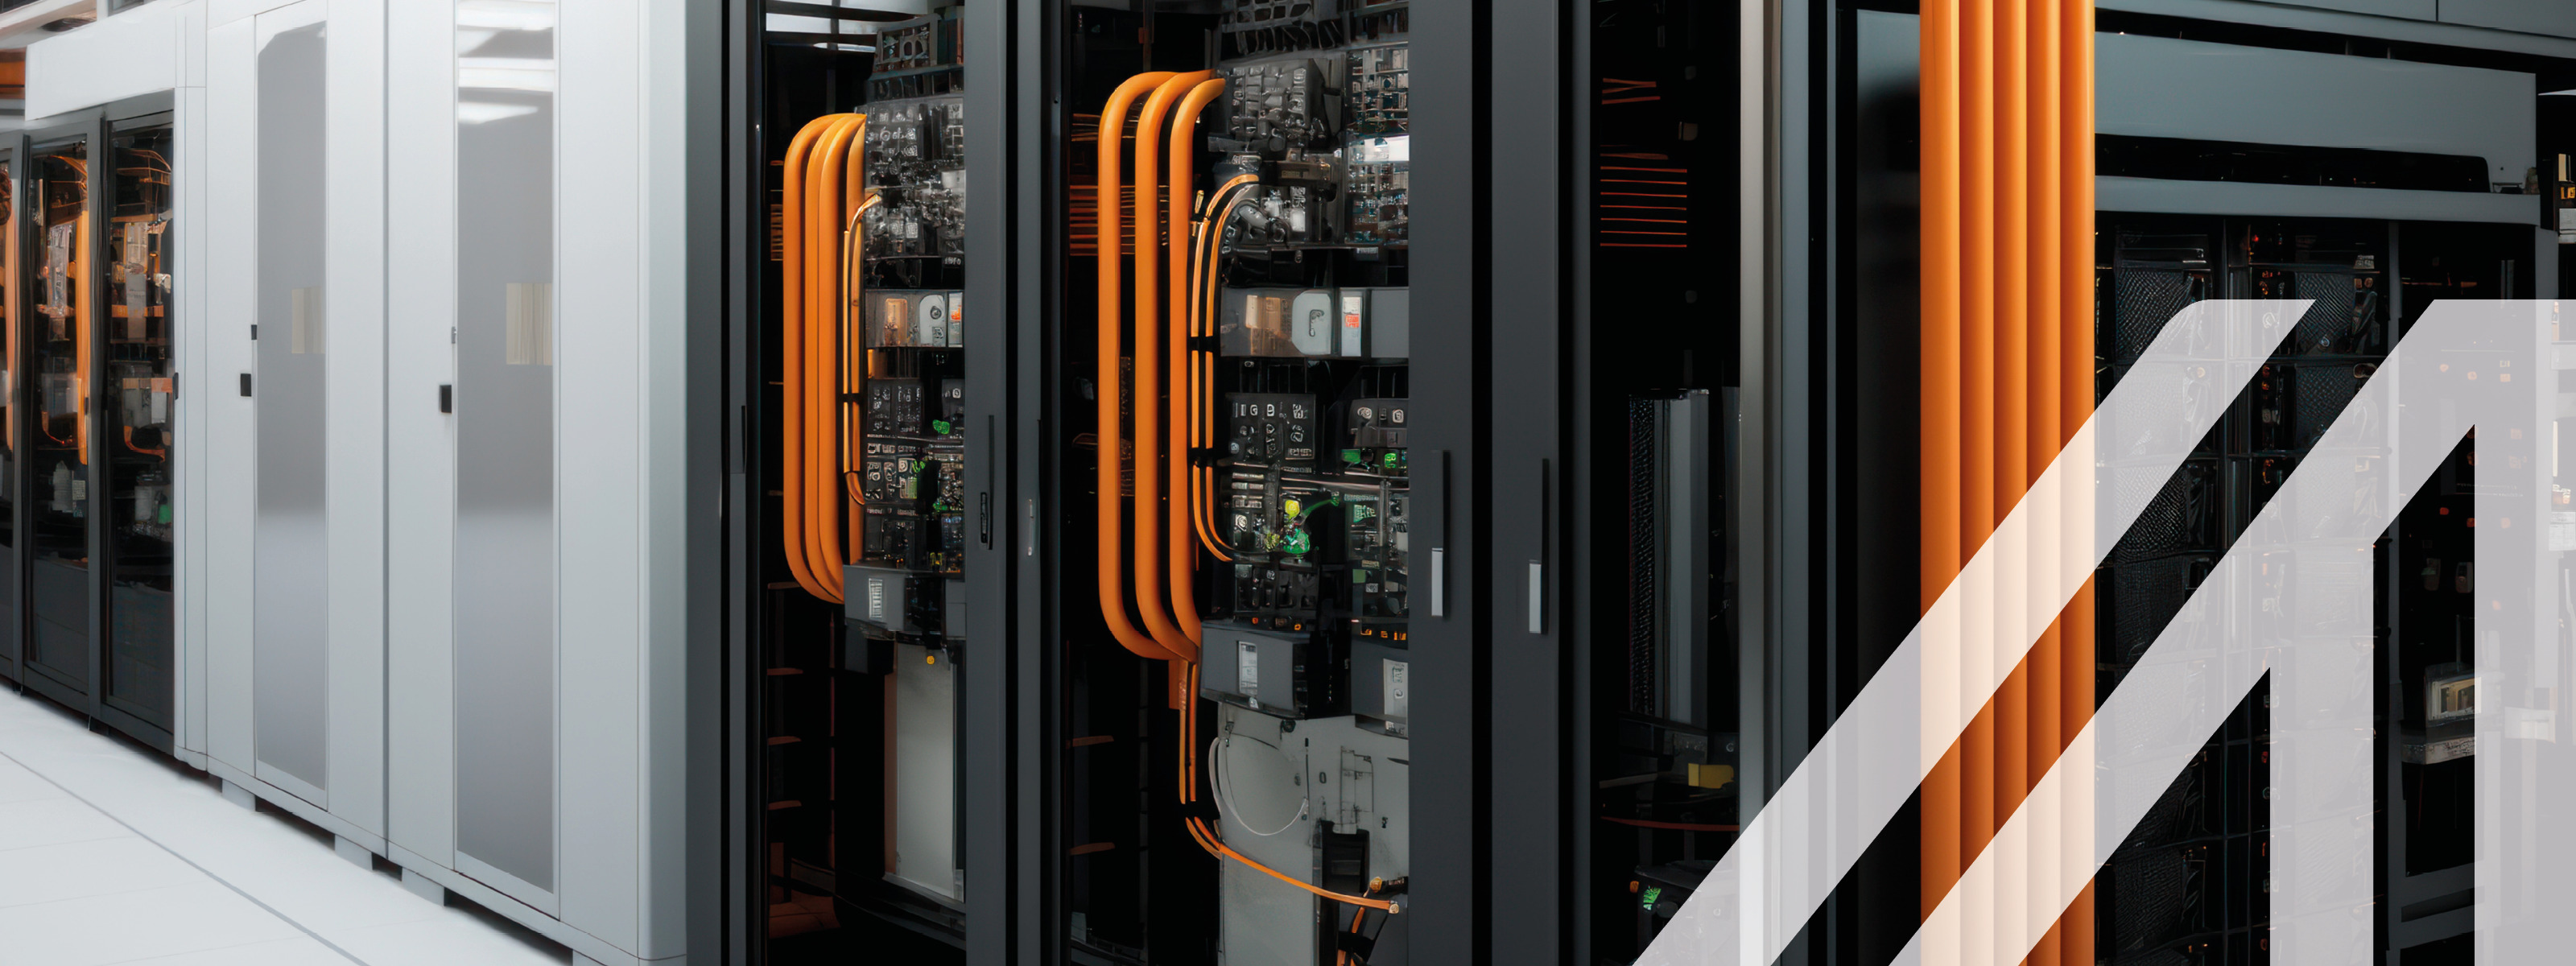 Darstellung eines hochmodernen Rechenzentrums mit Reihen von Serverschränken, Kühlsystemen und redundanten Stromversorgungen